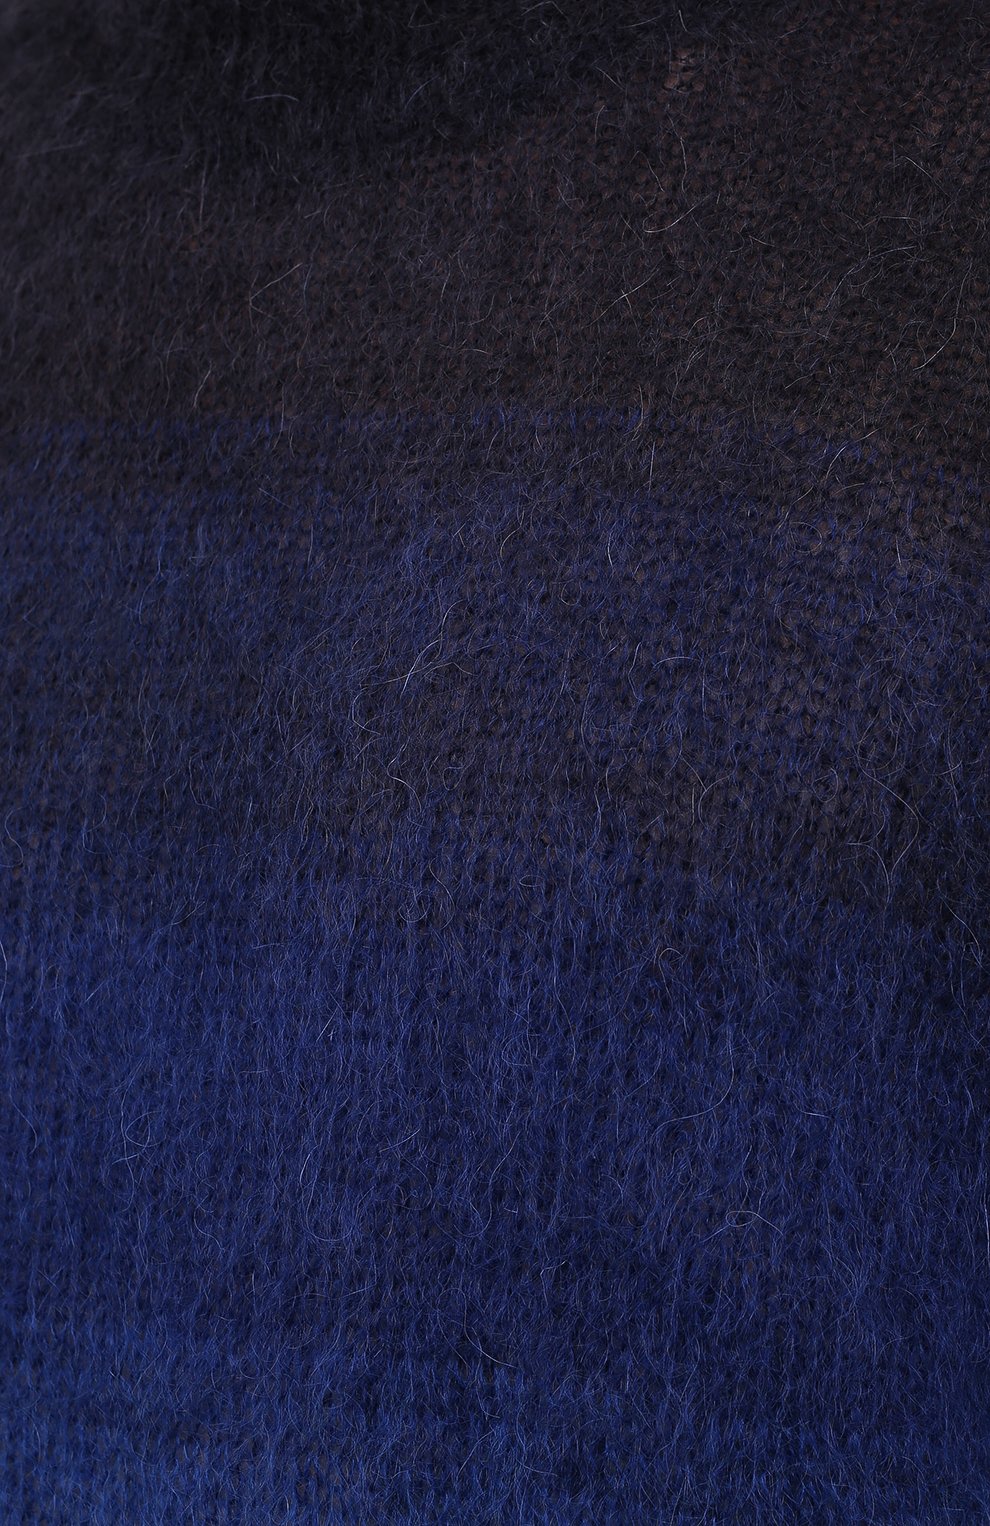 Мужской свитер ISABEL MARANT темно-синего цвета, арт. PU1275-21A054H/DRUSSELLH | Фото 5 (Материал внешний: Шерсть; Рукава: Длинные; Принт: Без принта; Длина (для топов): Стандартные; Мужское Кросс-КТ: Свитер-одежда; Стили: Минимализм)